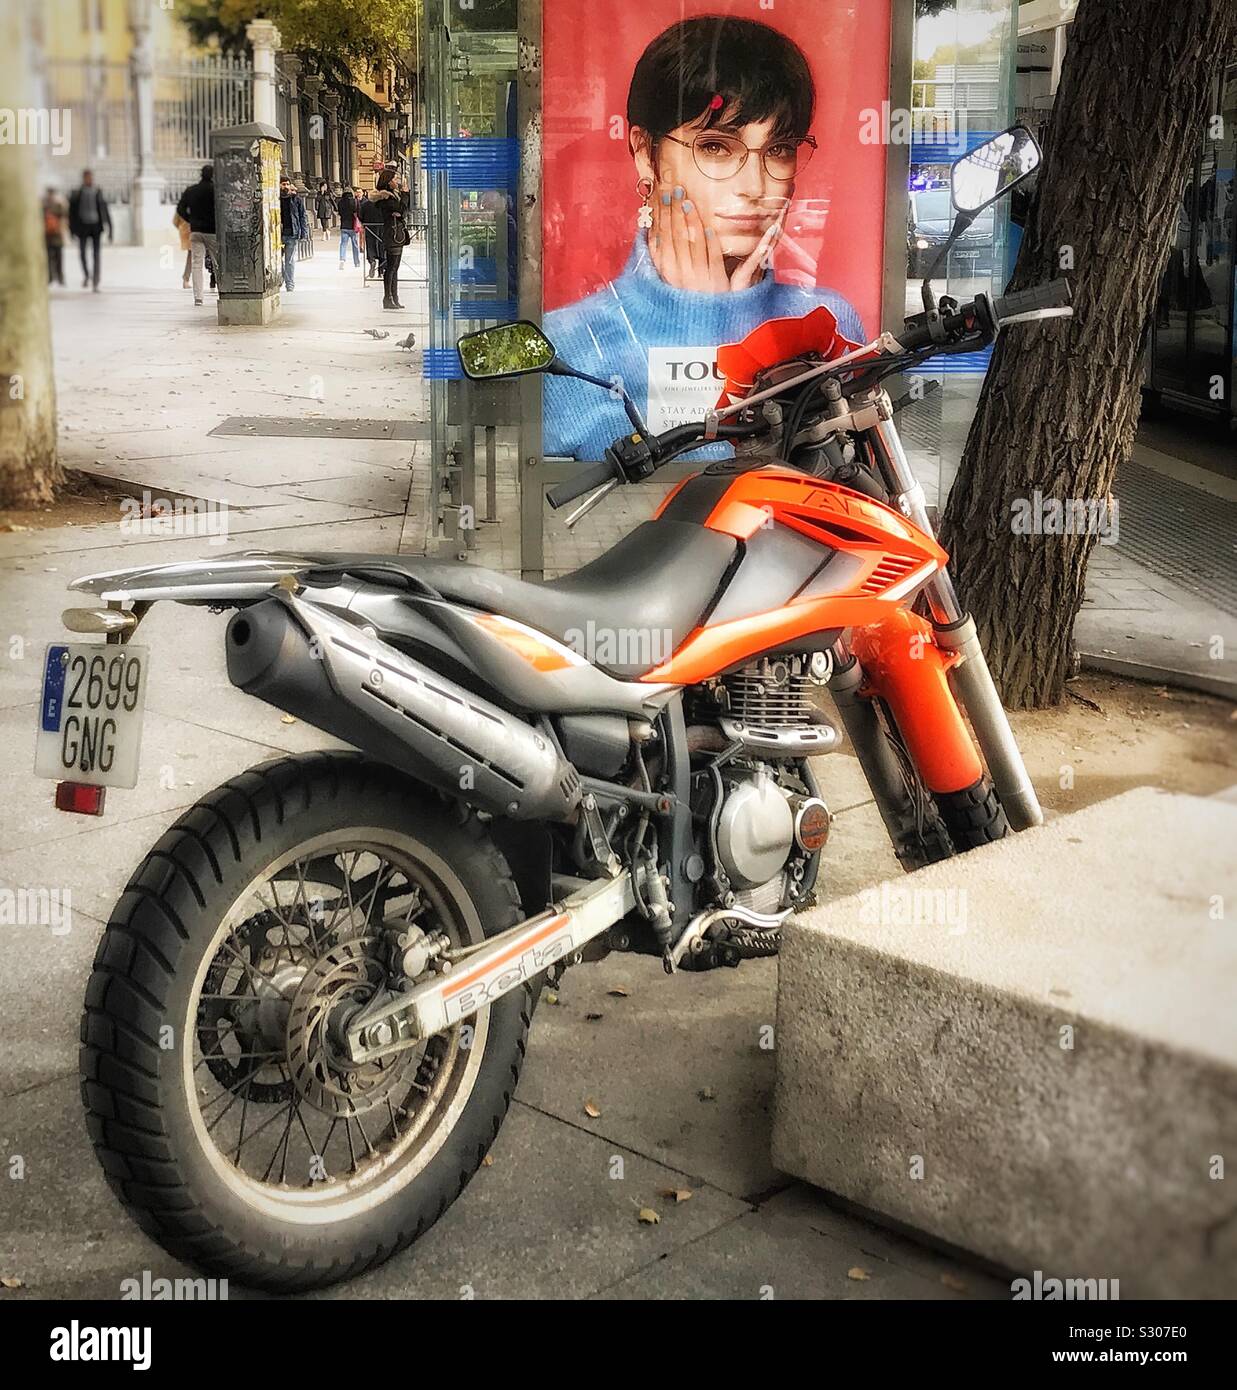 Una moto è parcheggiata sul marciapiede davanti a un bus shelter in cui vi è una foto di una donna in un annuncio Foto Stock